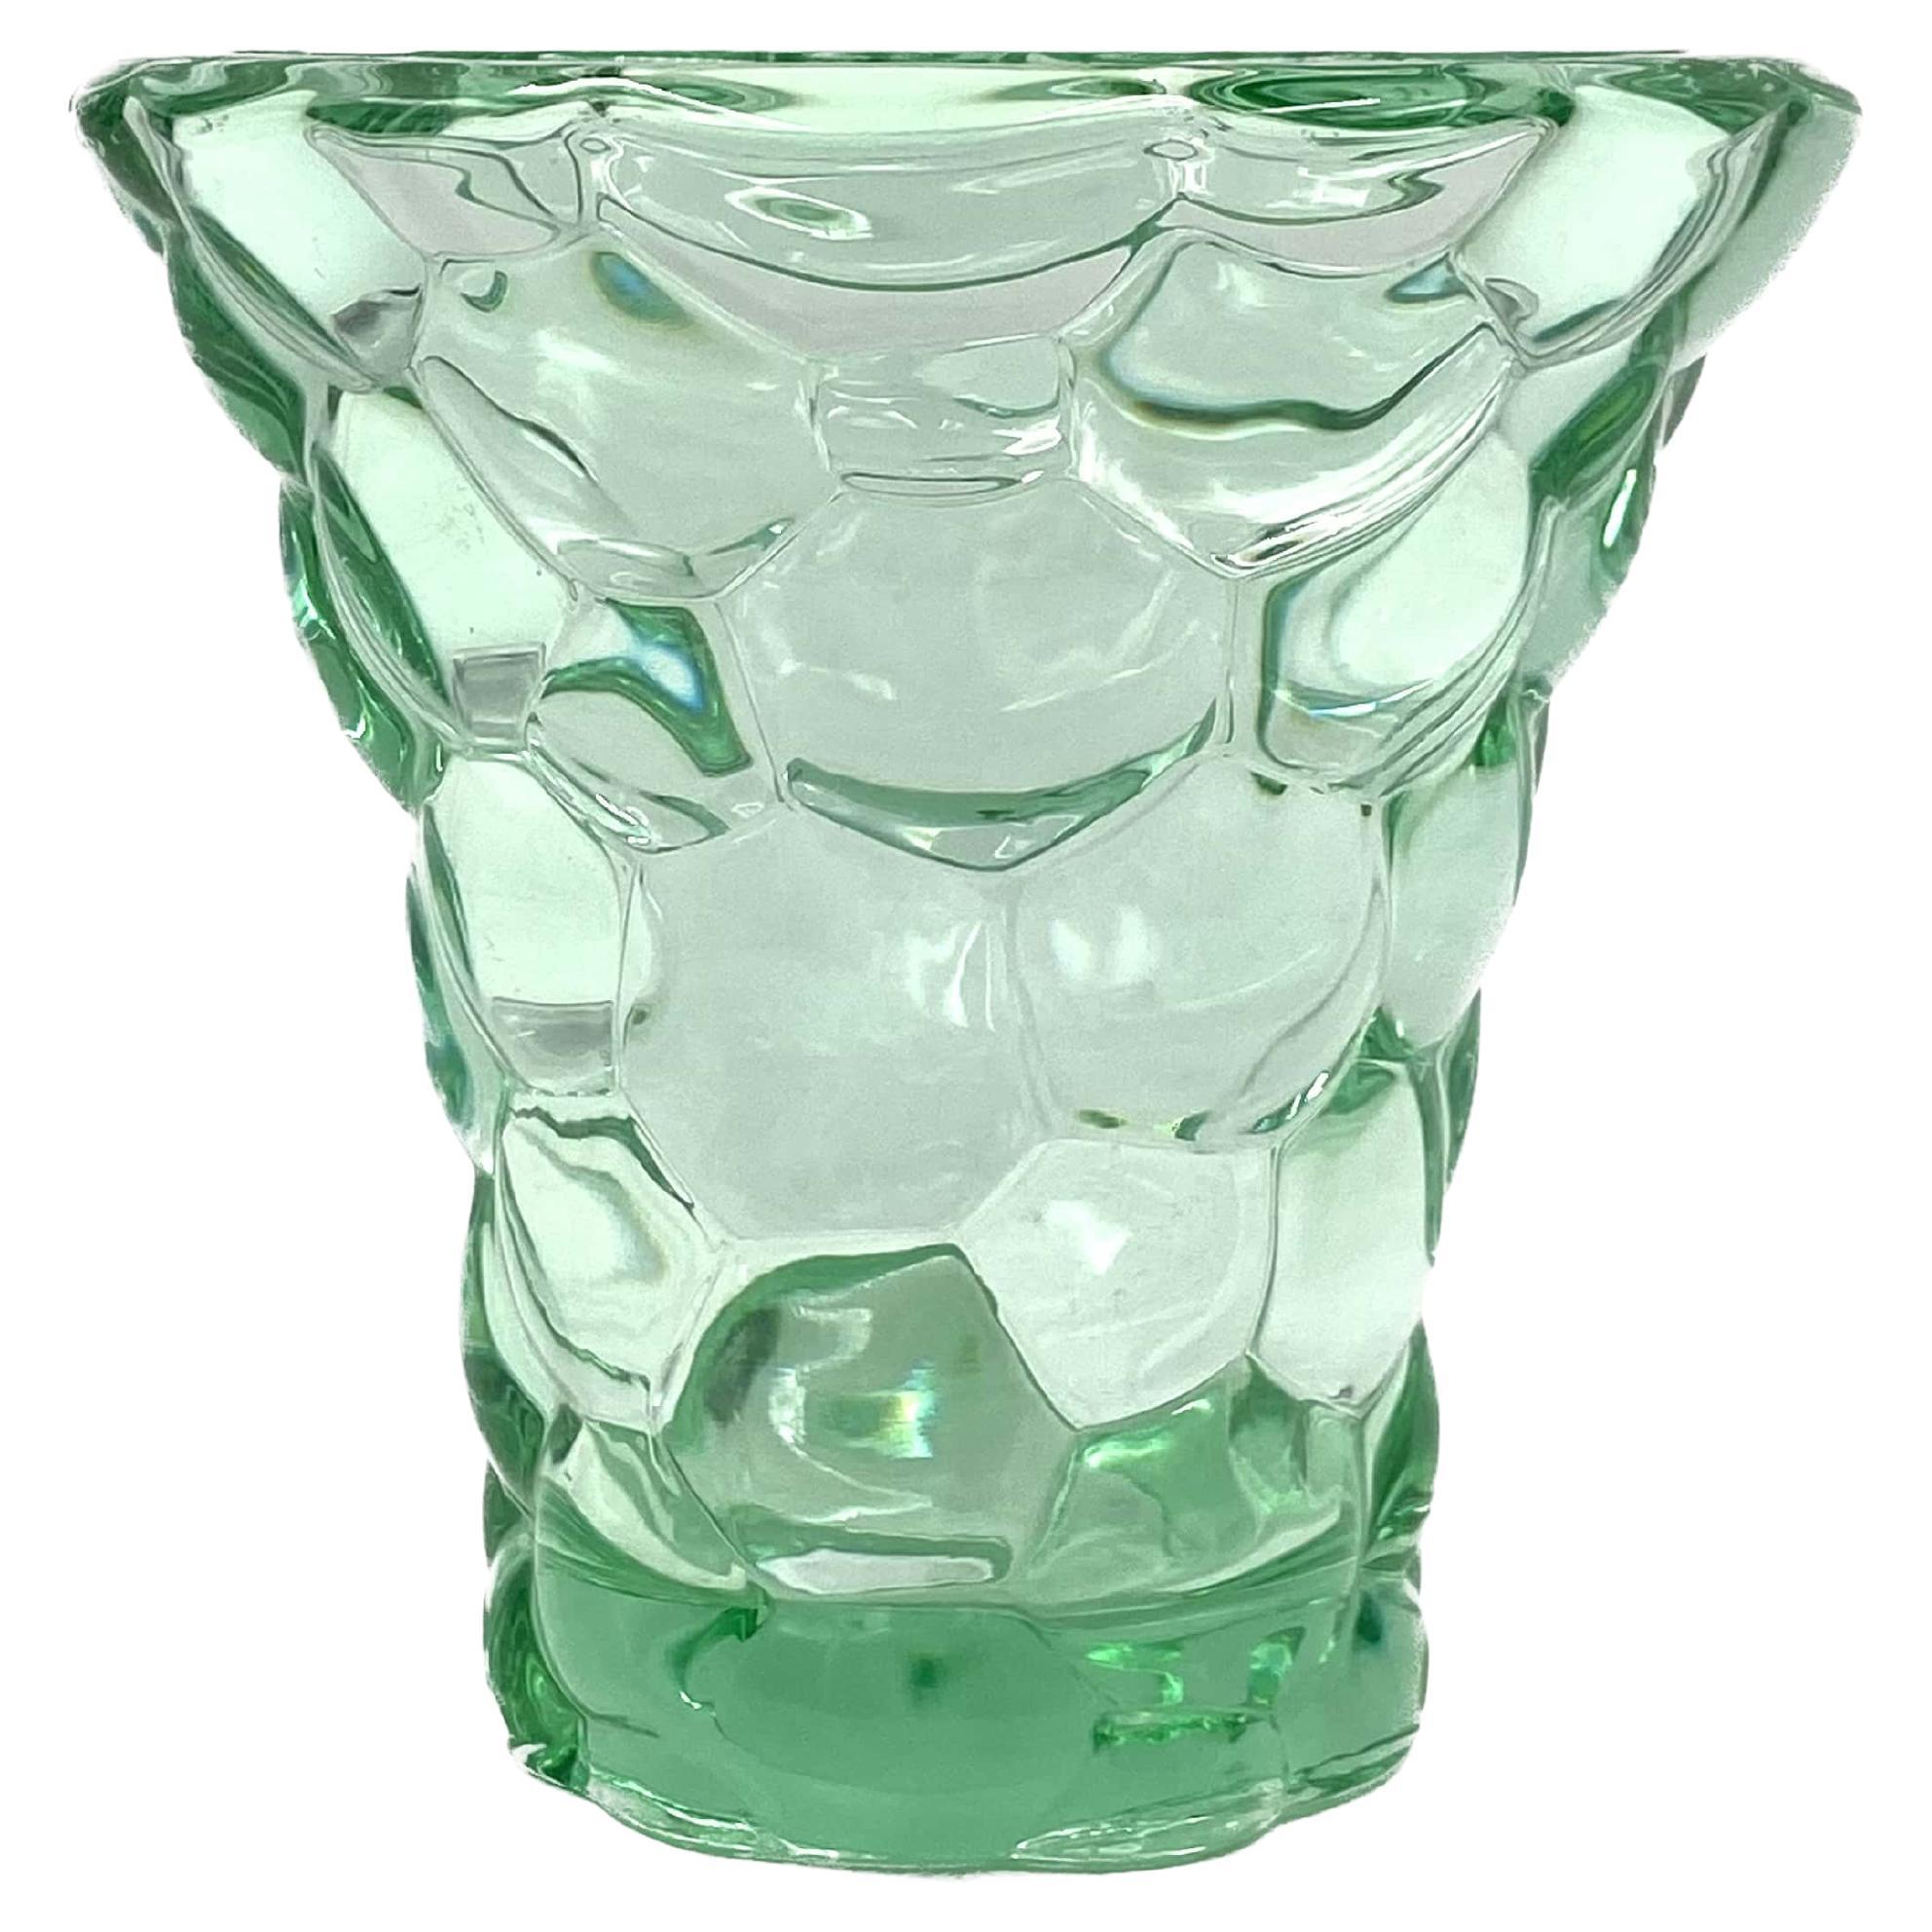 Pierre D'Avesn, Wassergrüne Kristallvase "Honeycomb", Frankreich 1930